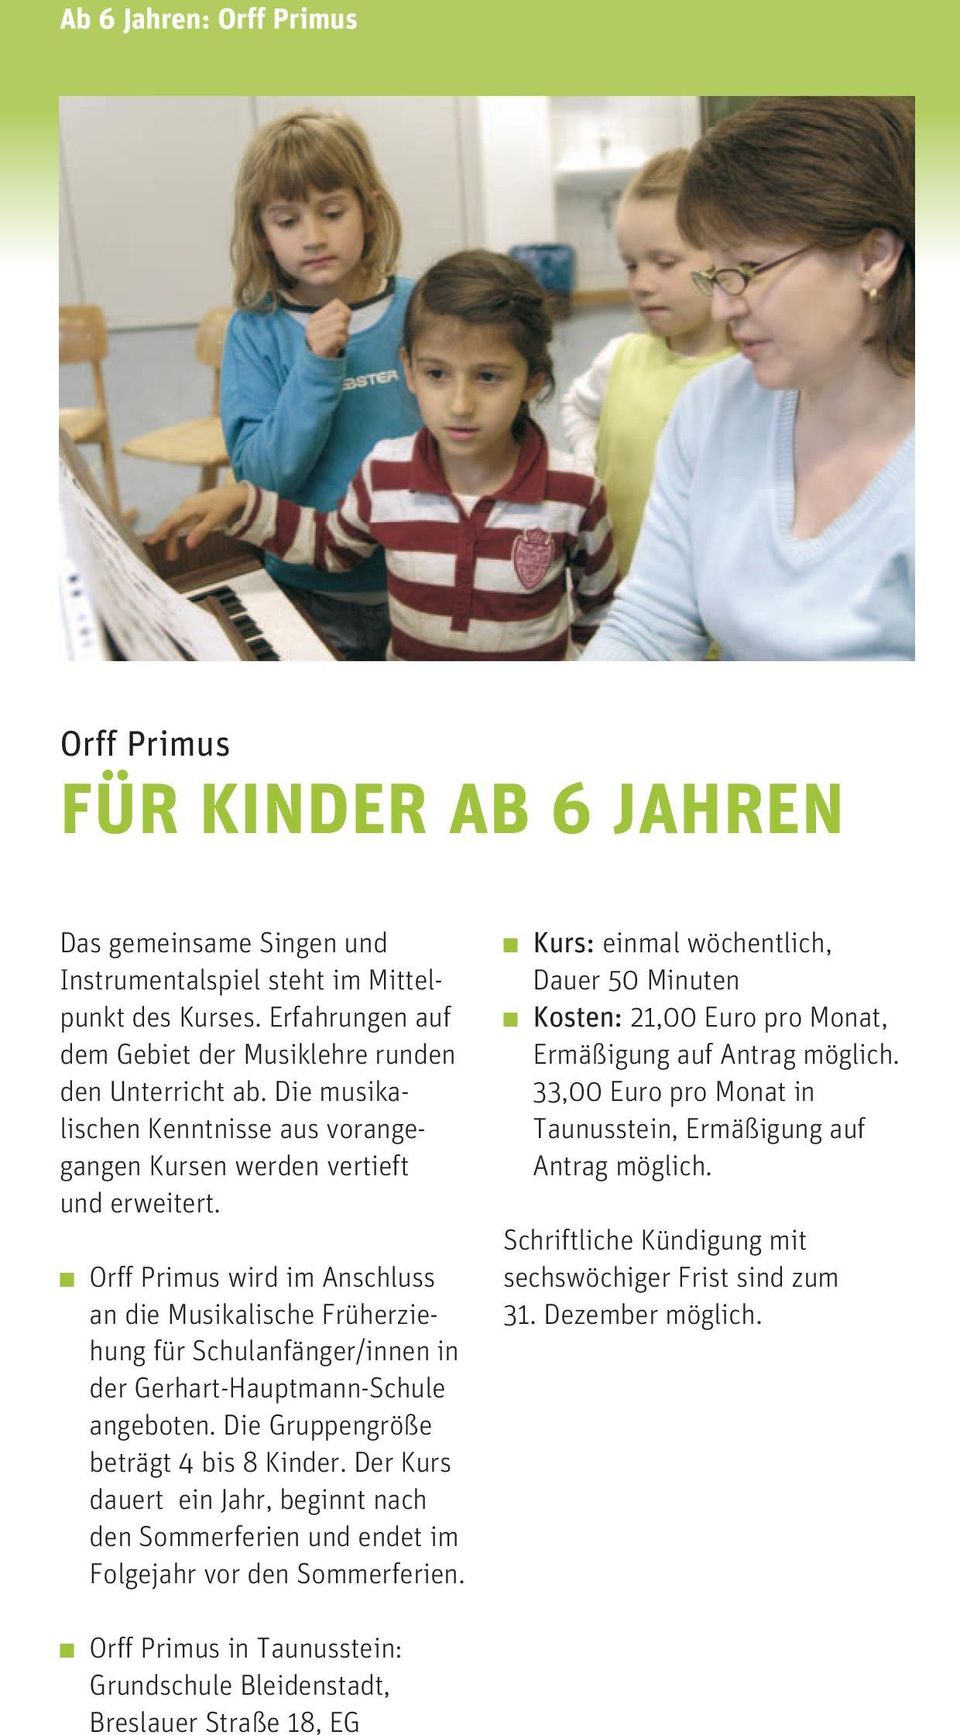 Orff Primus wird im Anschluss an die Musikalische Früherziehung für Schulanfänger/innen in der Gerhart-Hauptmann-Schule angeboten. Die Gruppengröße beträgt 4 bis 8 Kinder.